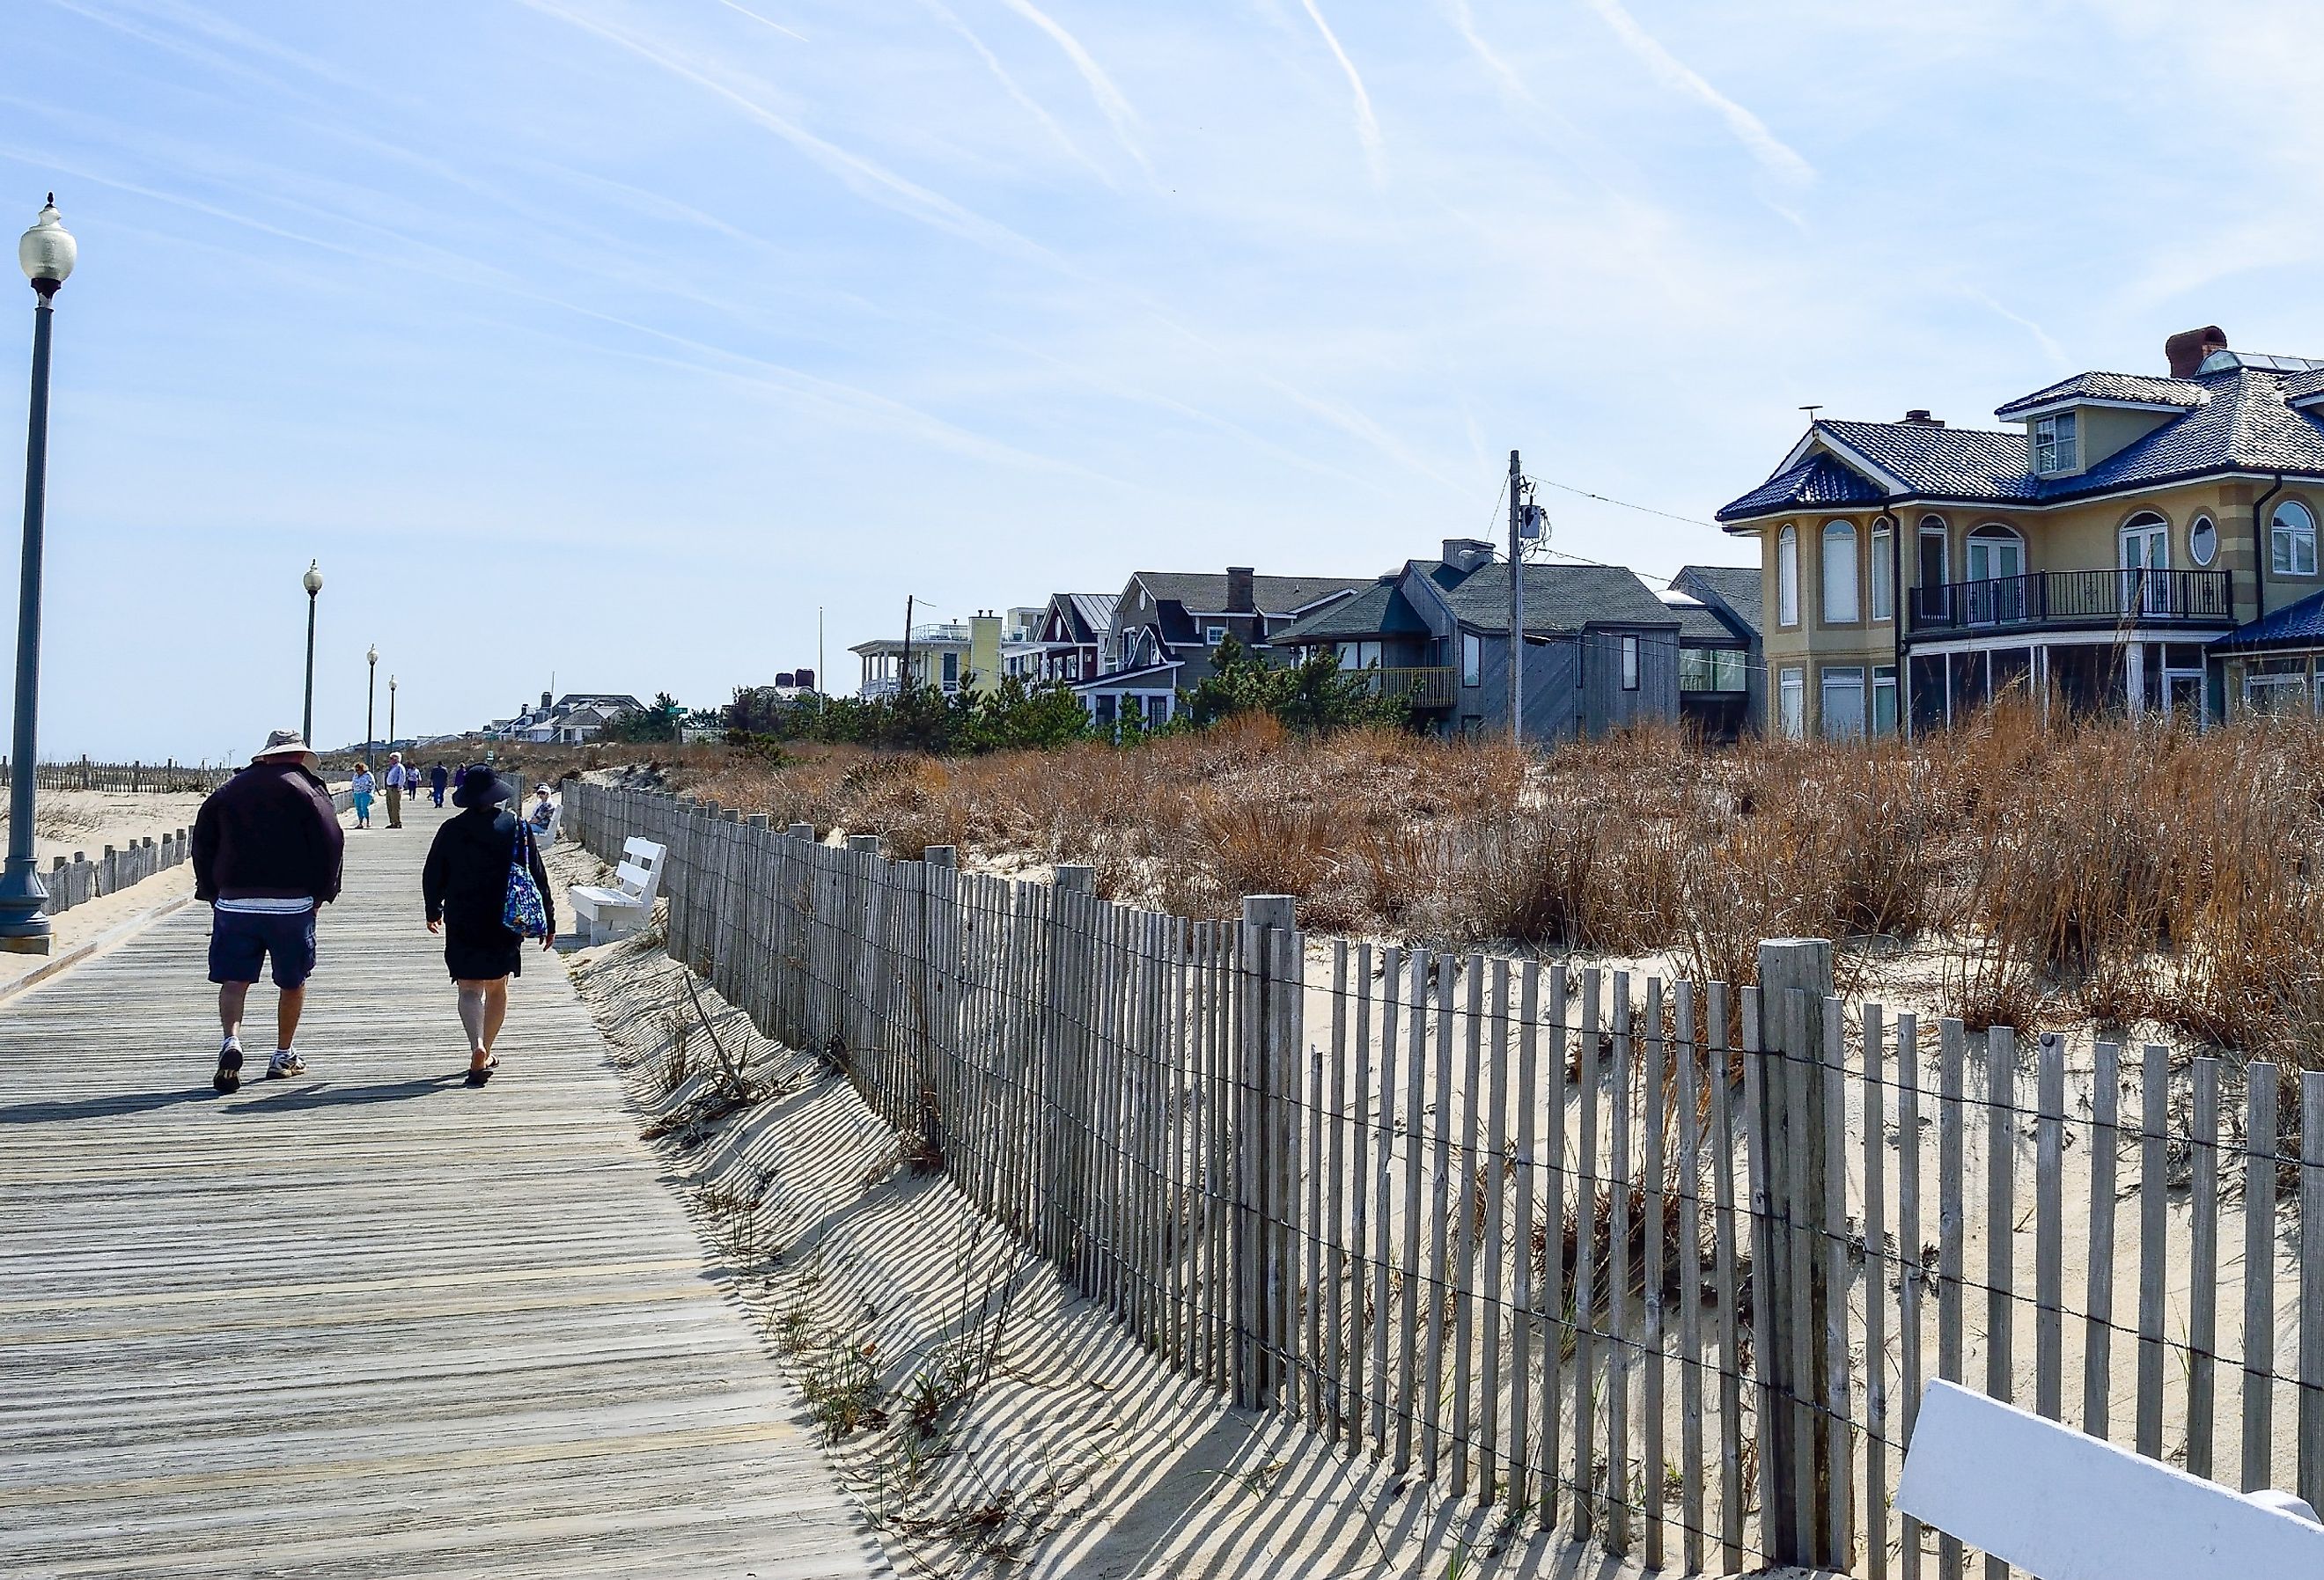 People walking along the boardwalk by the beach in Rehoboth Beach, Delaware.